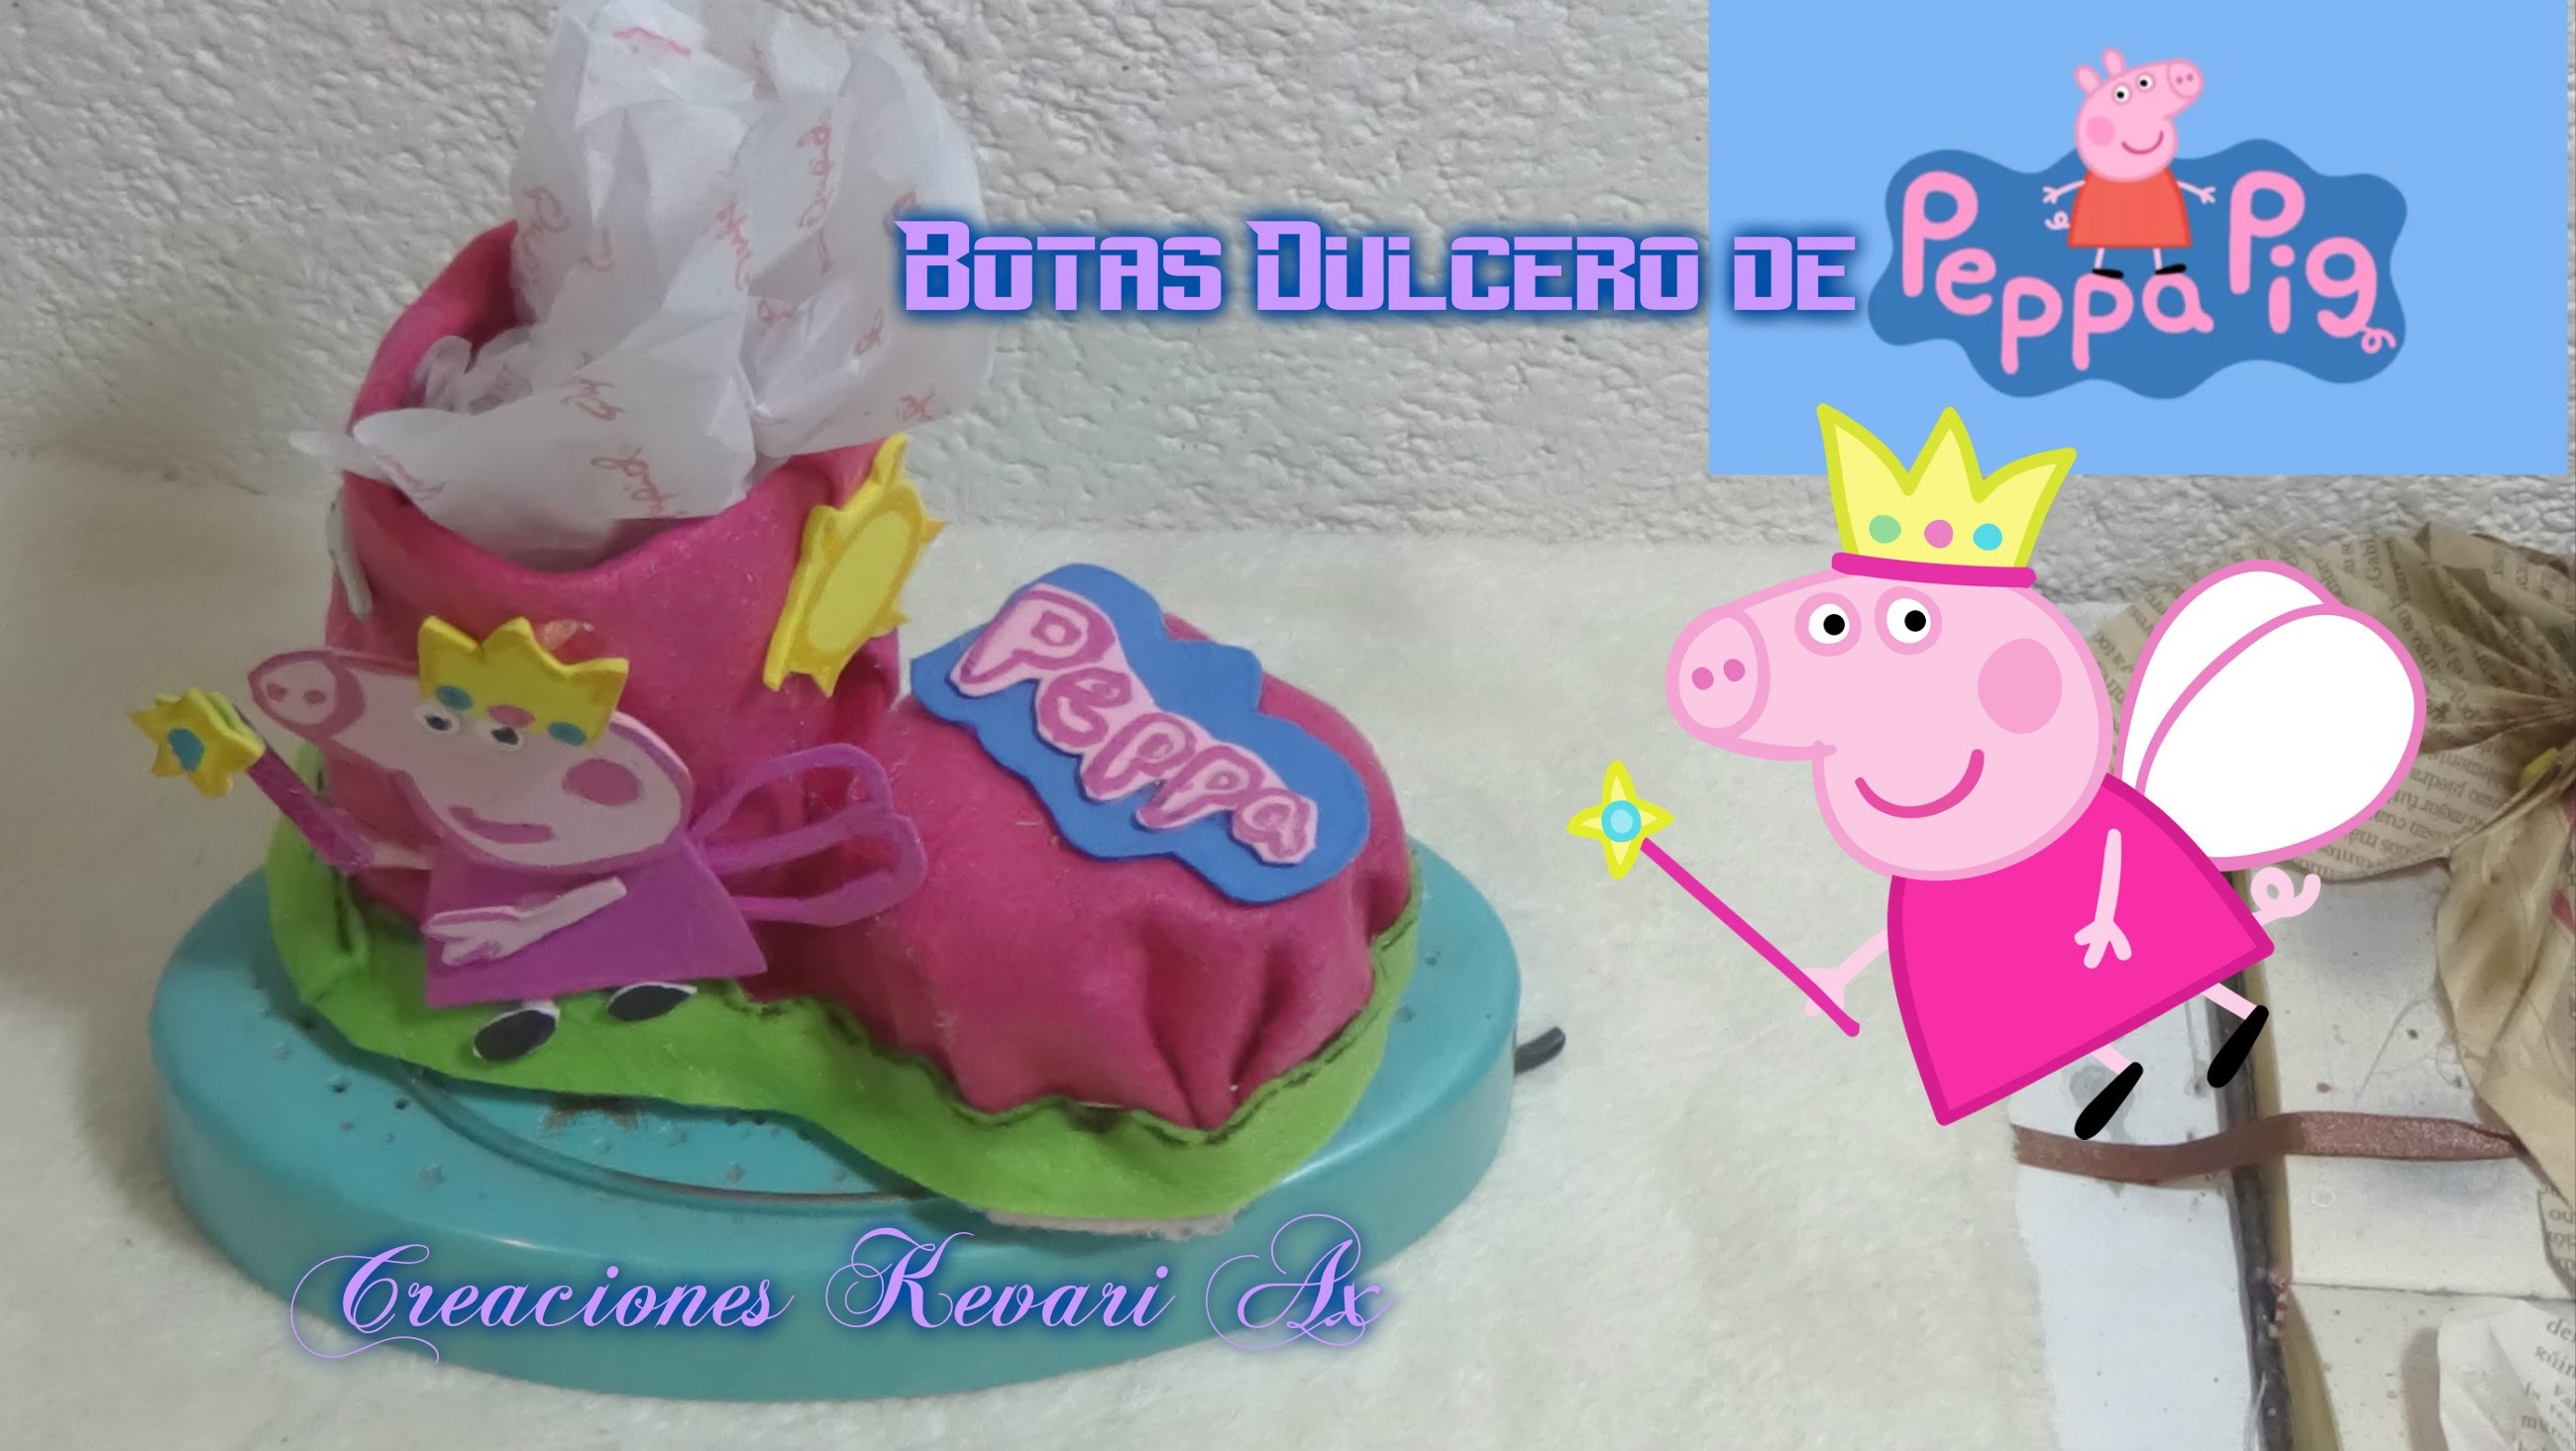 Bota Dulcero de Peppa Pig con material reciclado Botellas plásticas